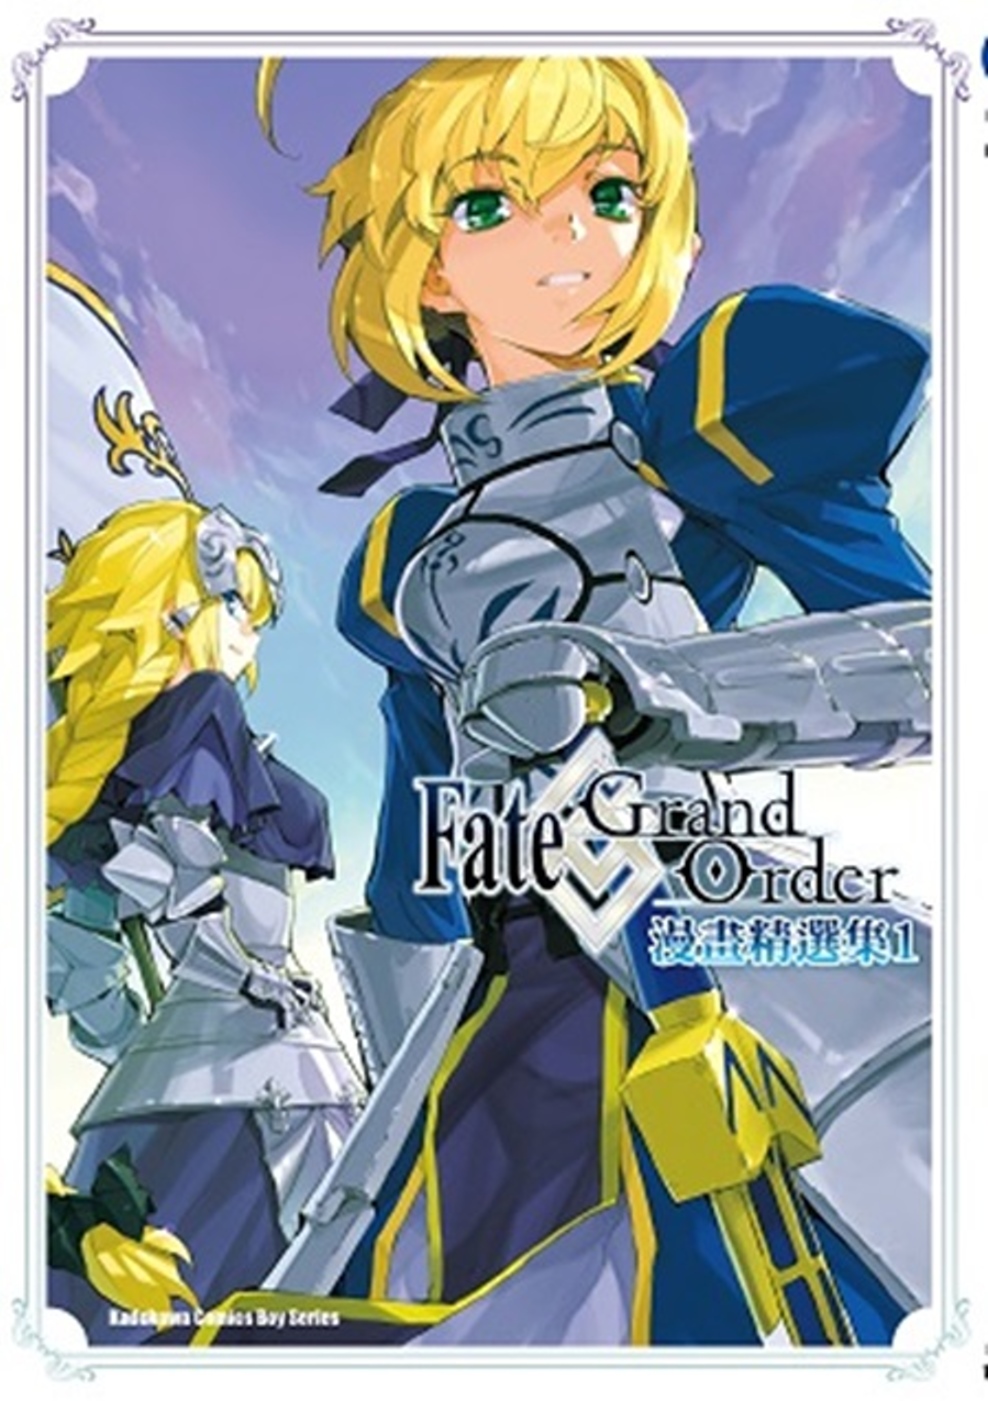 Fate/Grand Order漫畫精選集 (1)